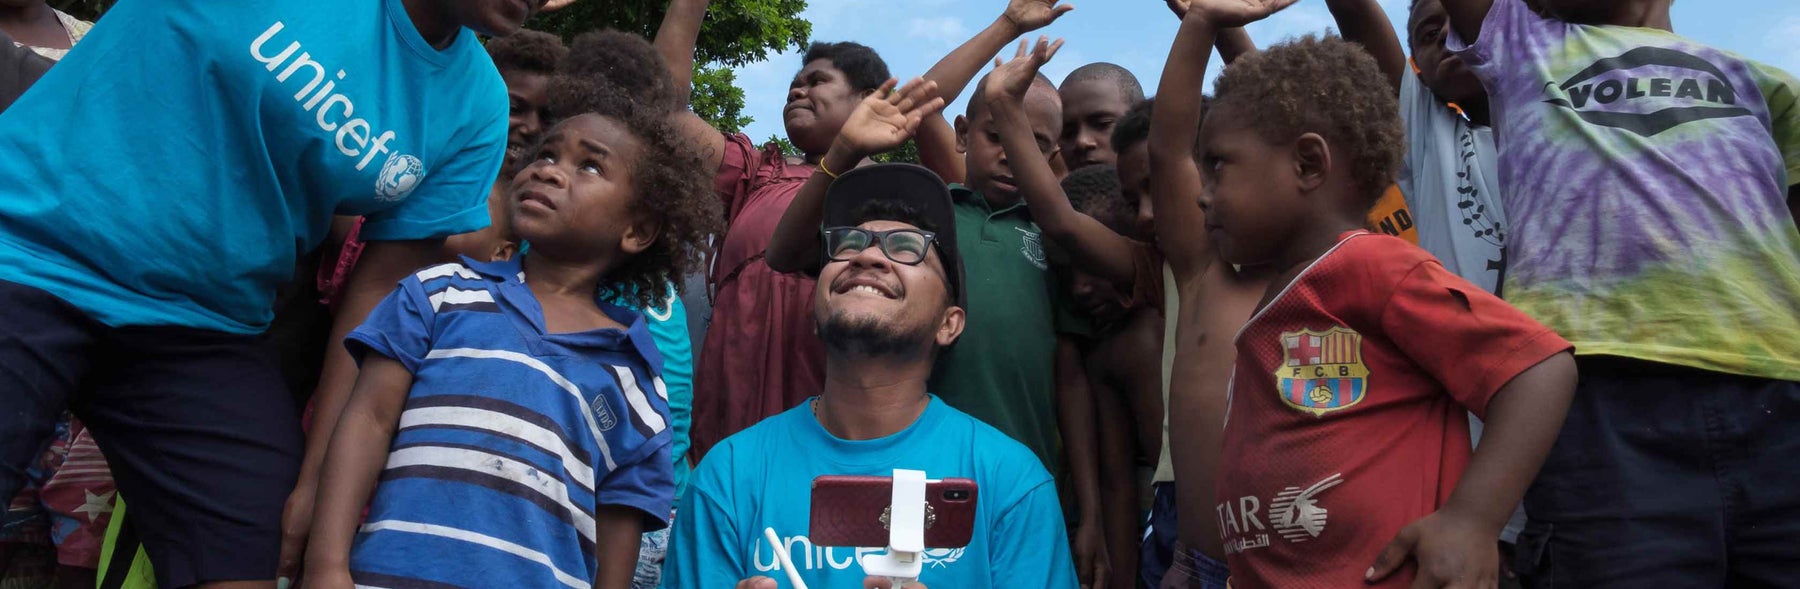 UNICEF staff introducing children in Vanuatu to the magic of drones